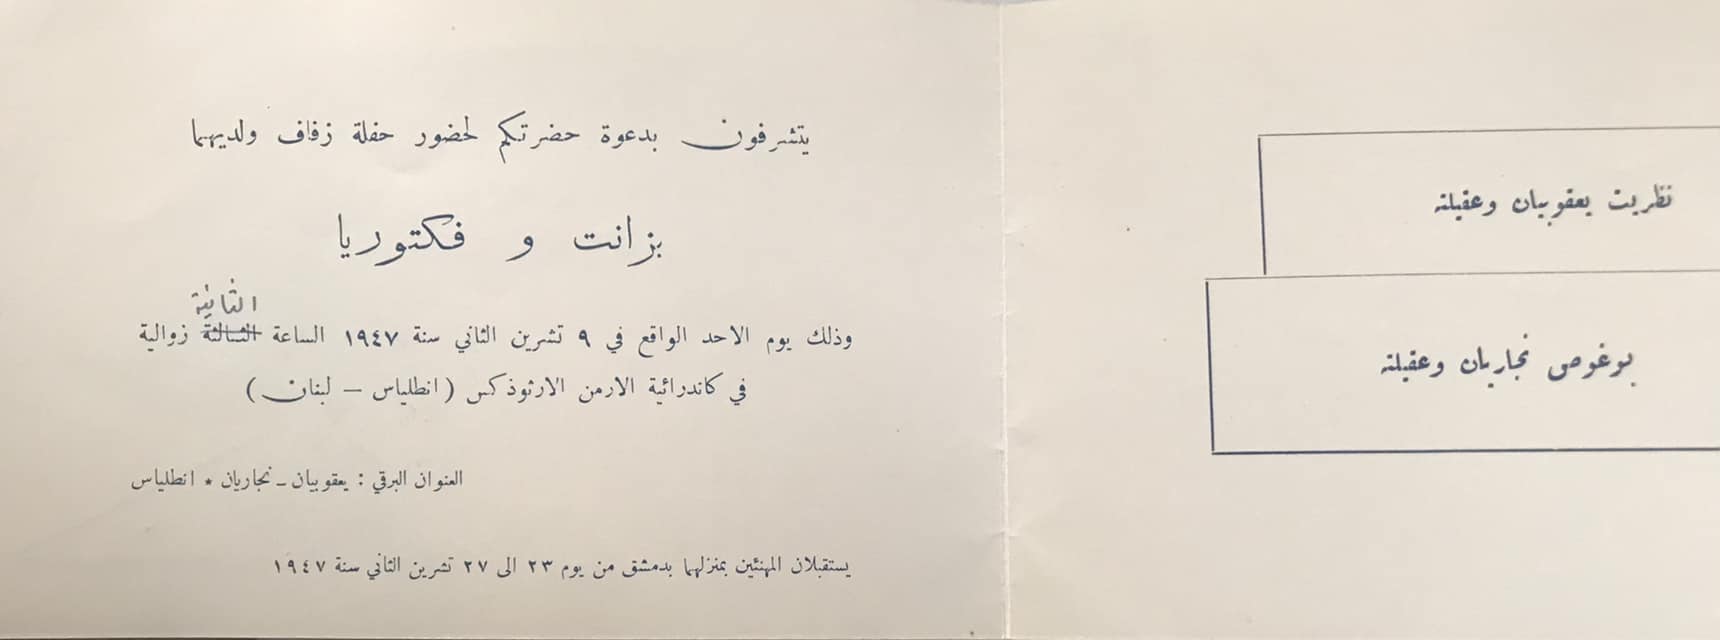 التاريخ السوري المعاصر - بطاقة دعوة لحفل زفاف في كاتدرائية الأرمن الأرثوذكس في لبنان عام 1947